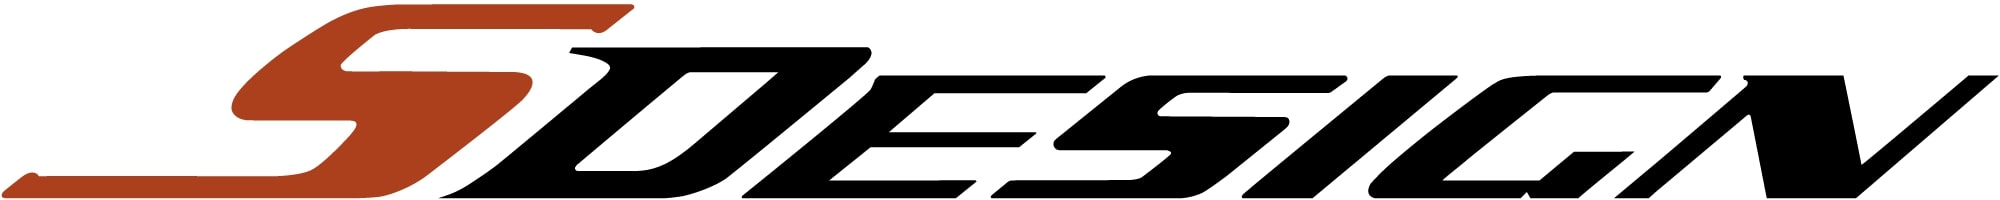 sdesign_logo